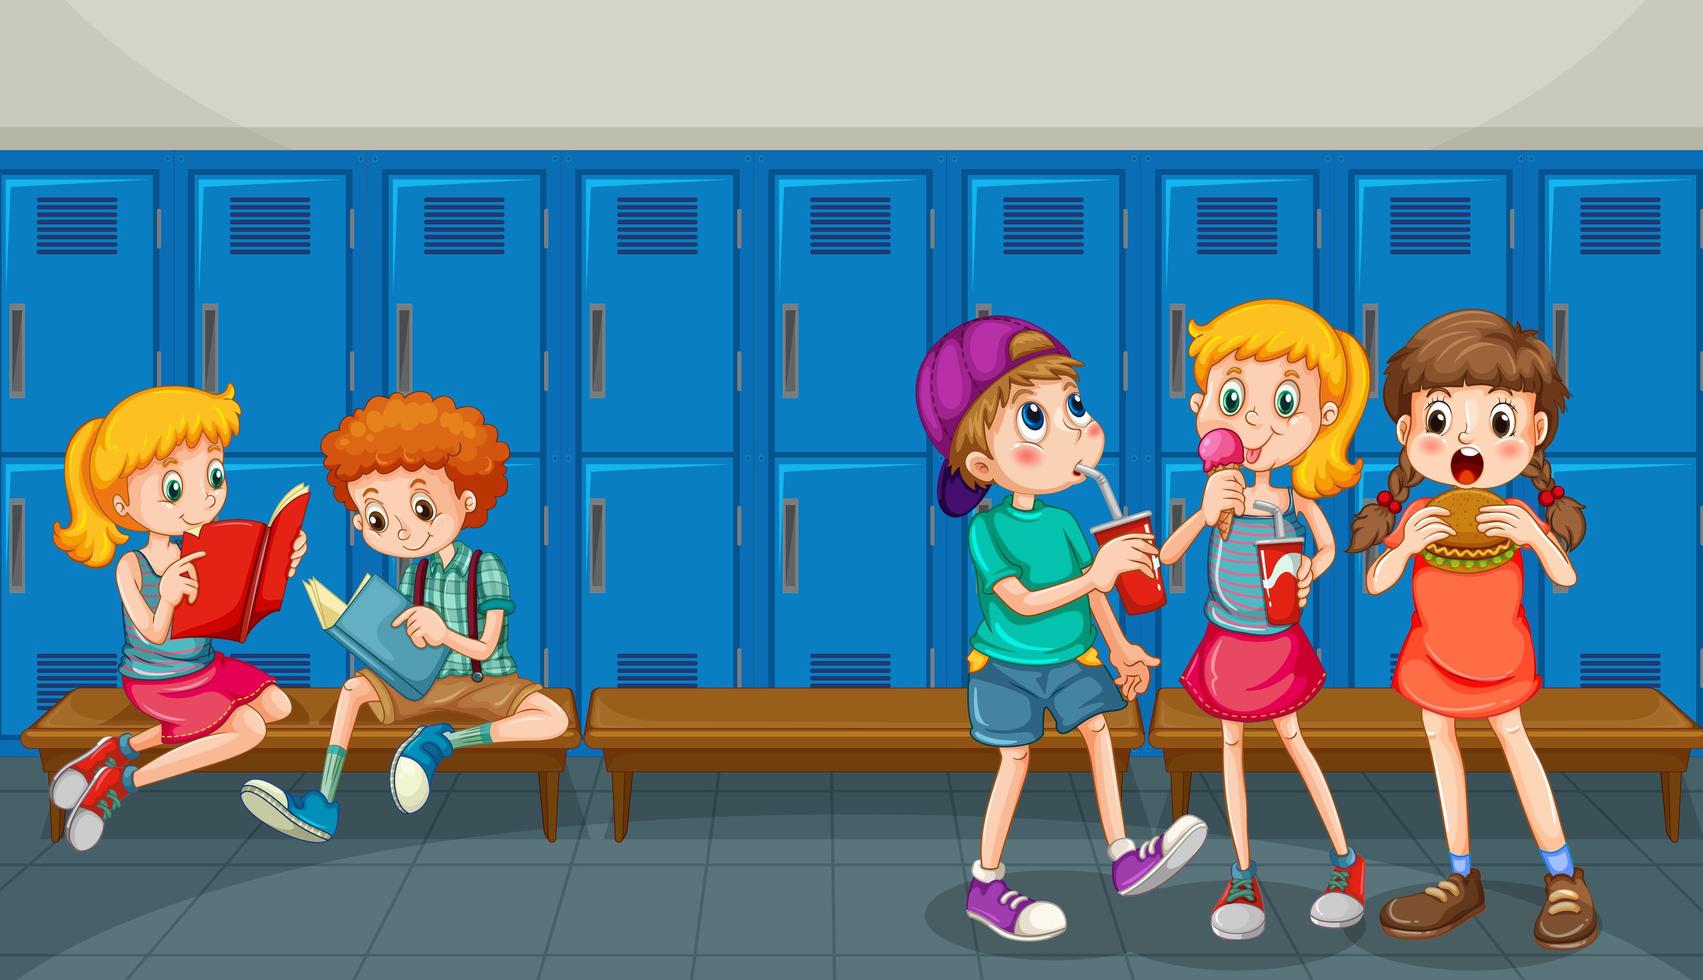 Happy children at school hallway vector